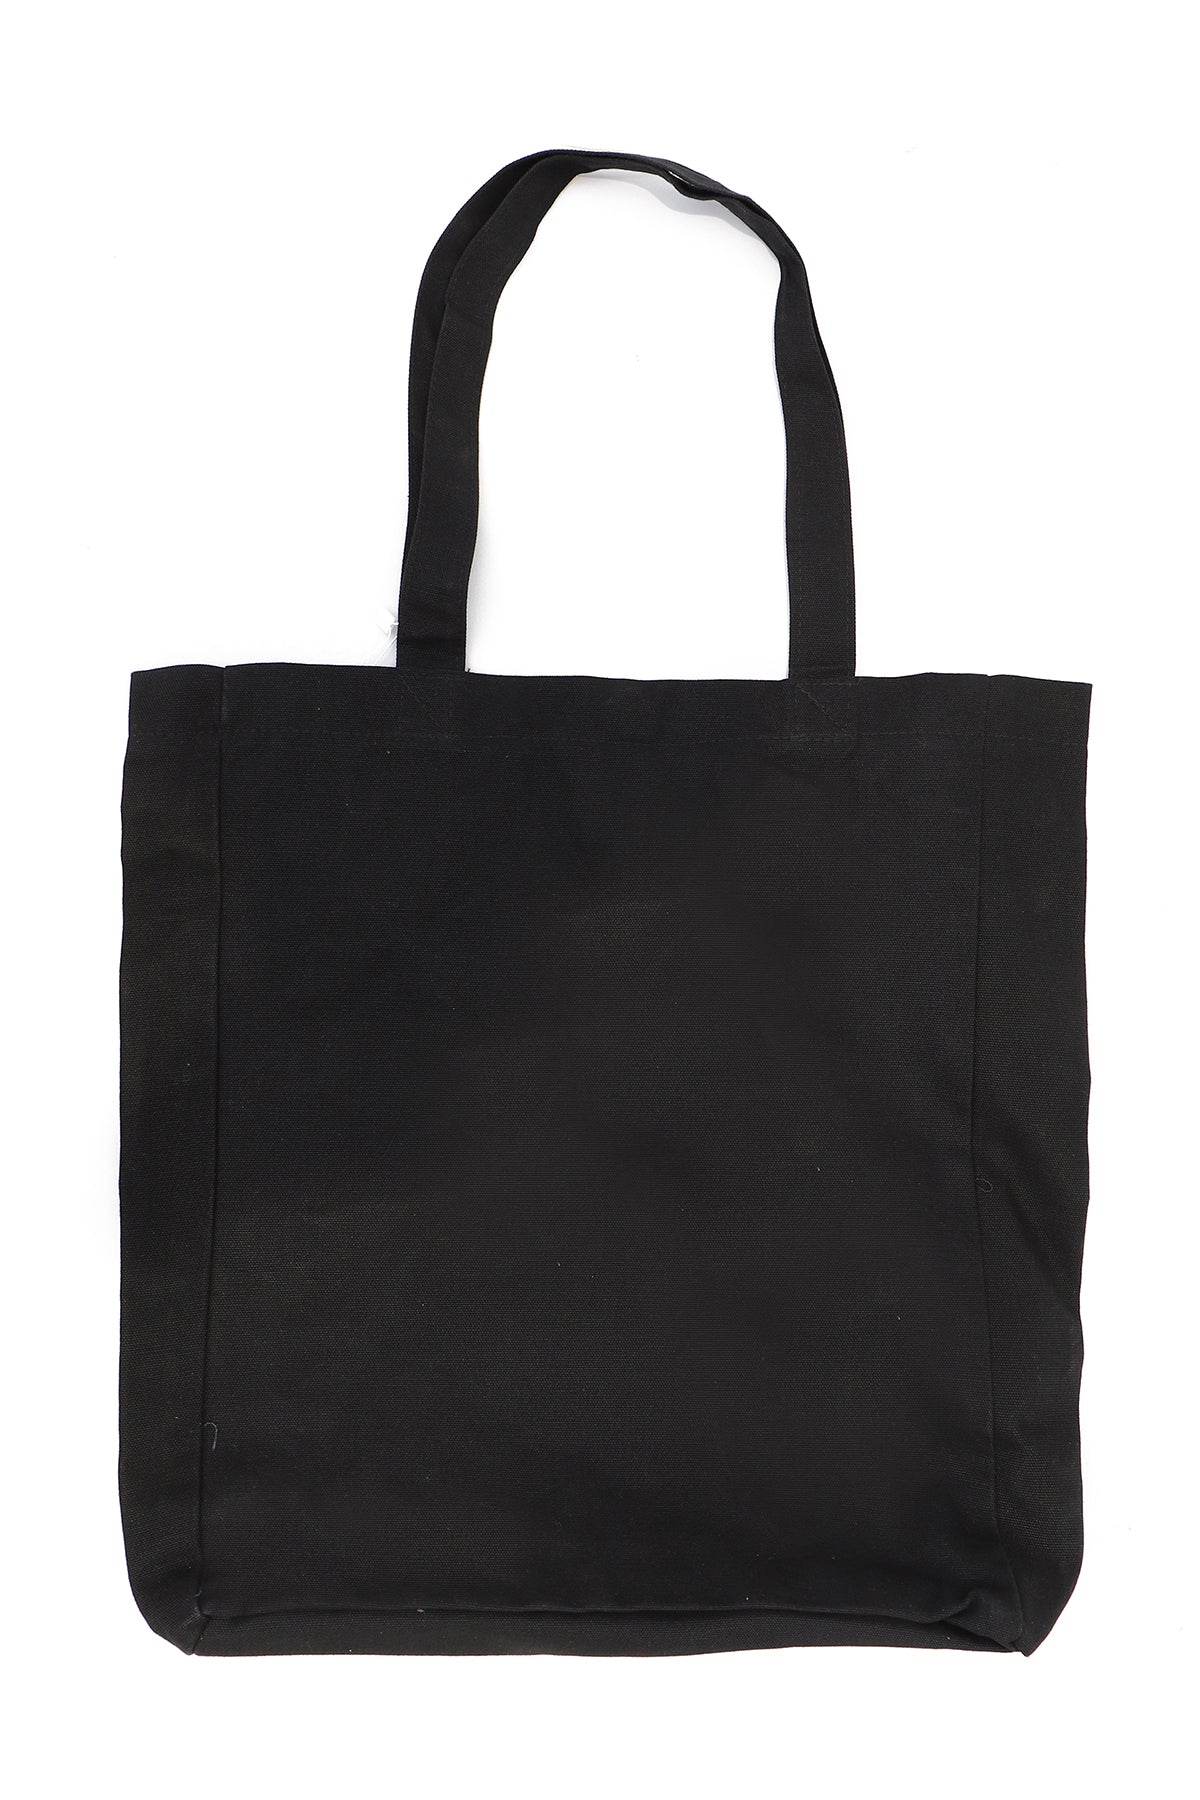 Women's Casual Printed Bag